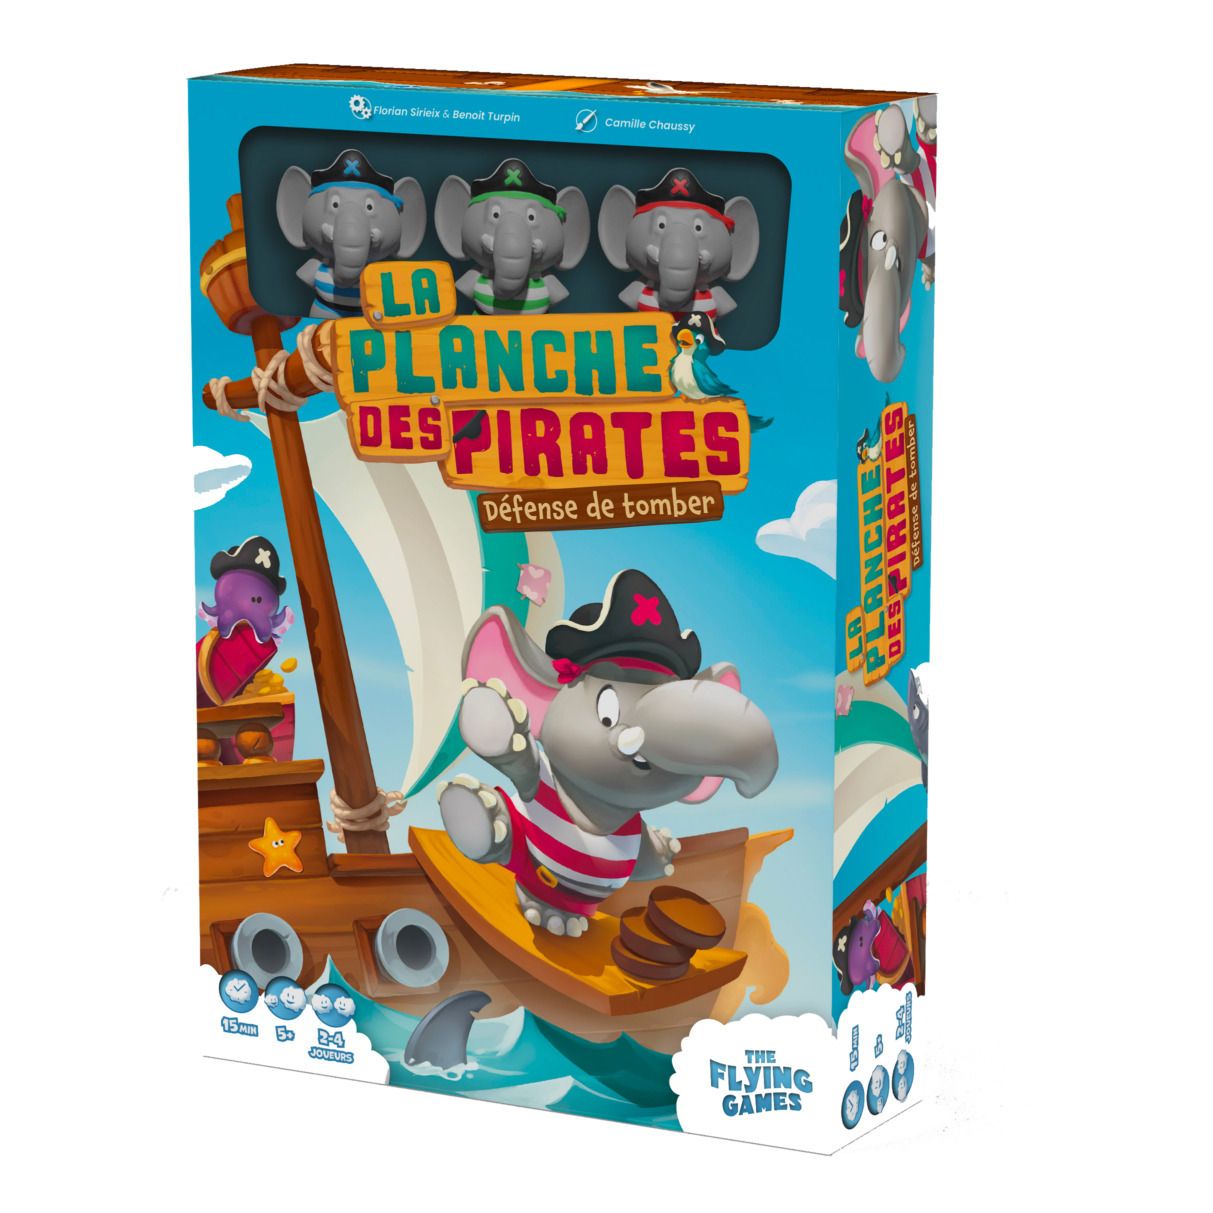 Placeholder für Produktvideo: Spiel La planche des pirates